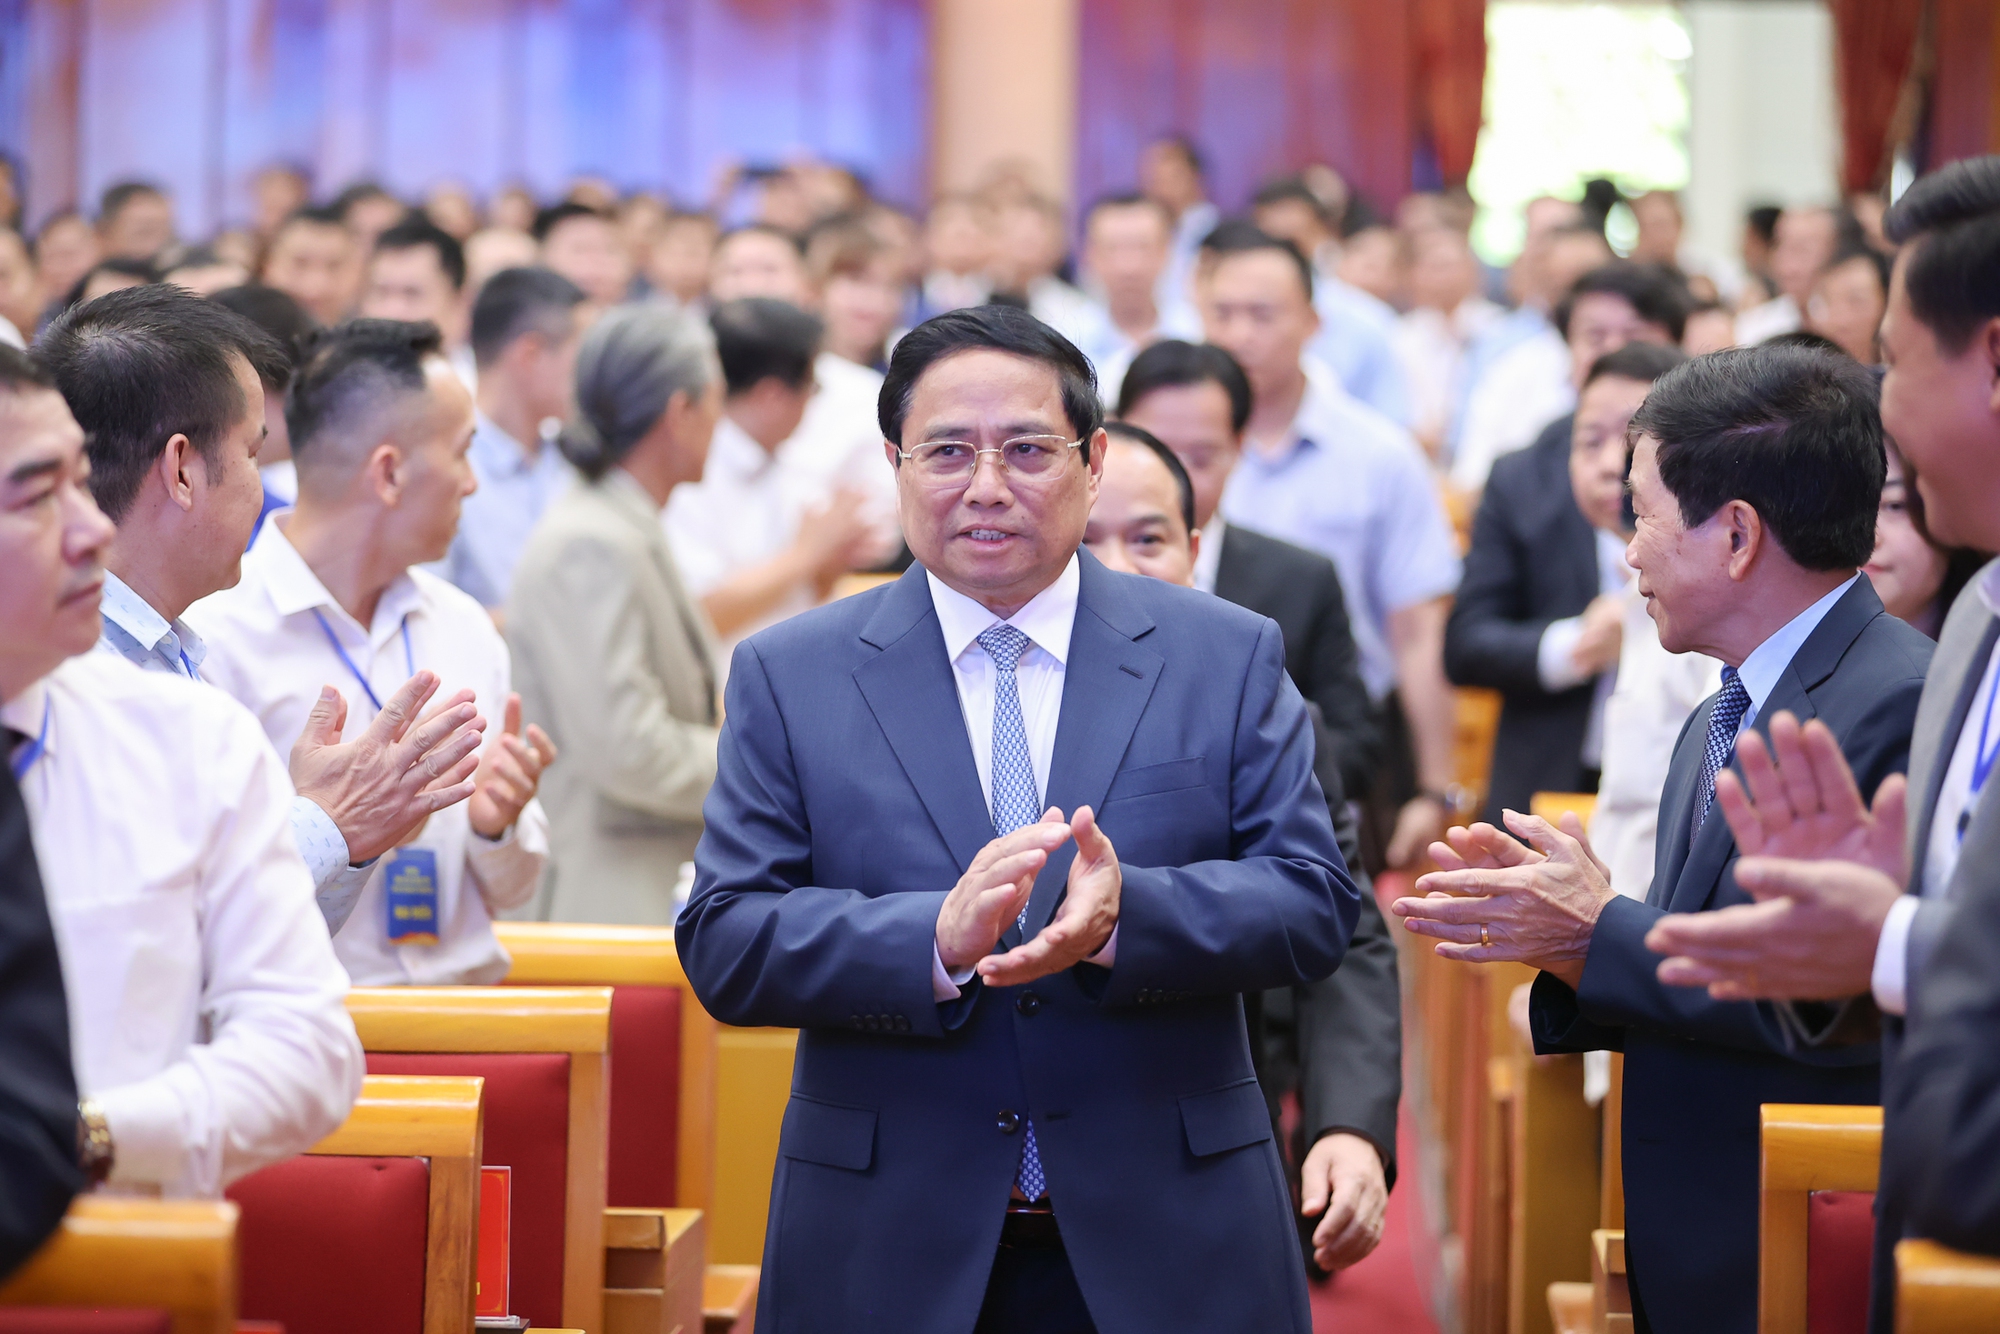 Thủ tướng Phạm Minh Chính dự Hội nghị công bố quy hoạch, xúc tiến đầu tư tỉnh Lạng Sơn